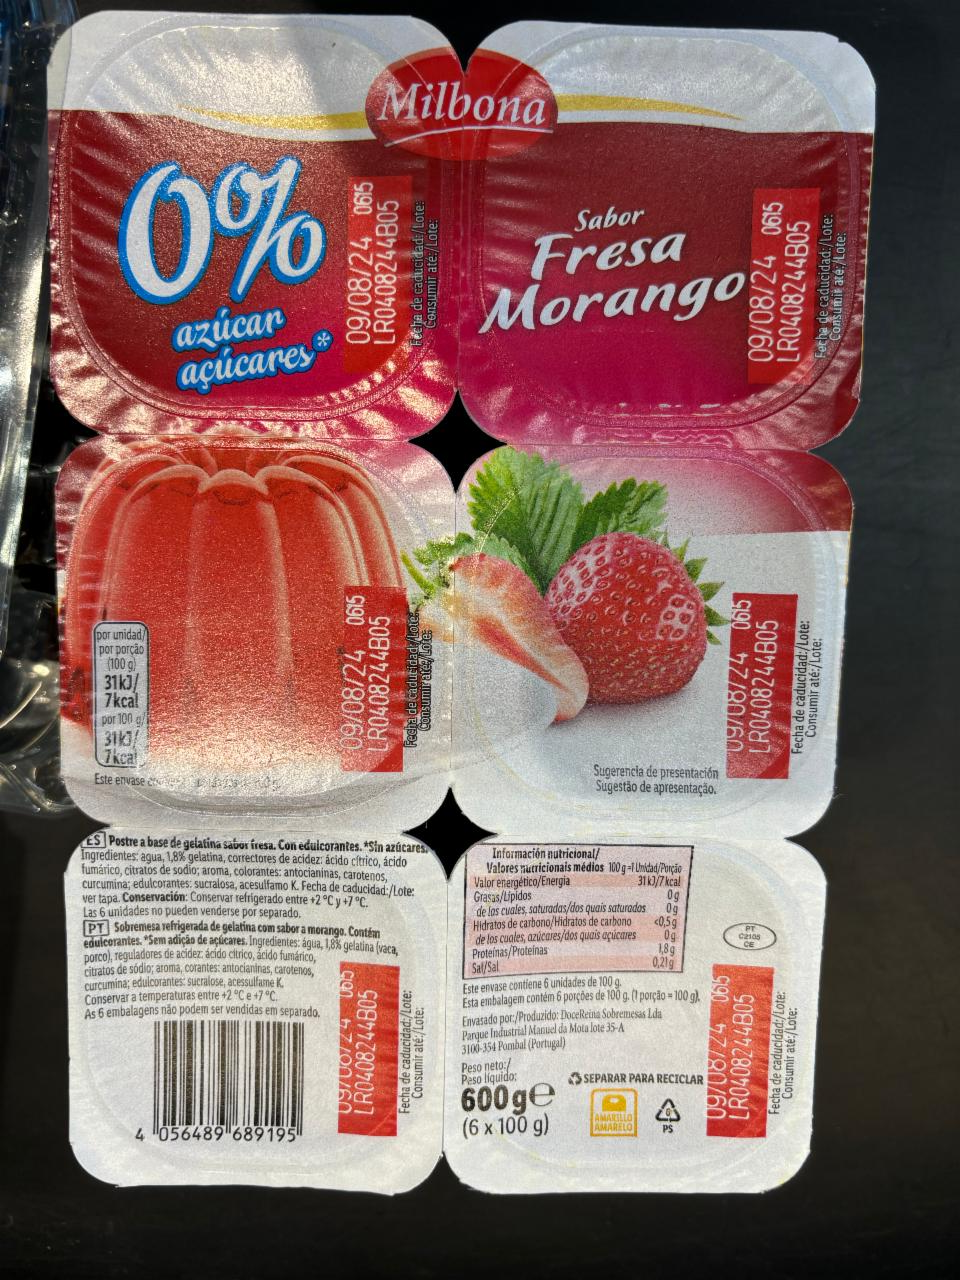 Fotografie - Sabor fresa morango 0% azúcar Milbona